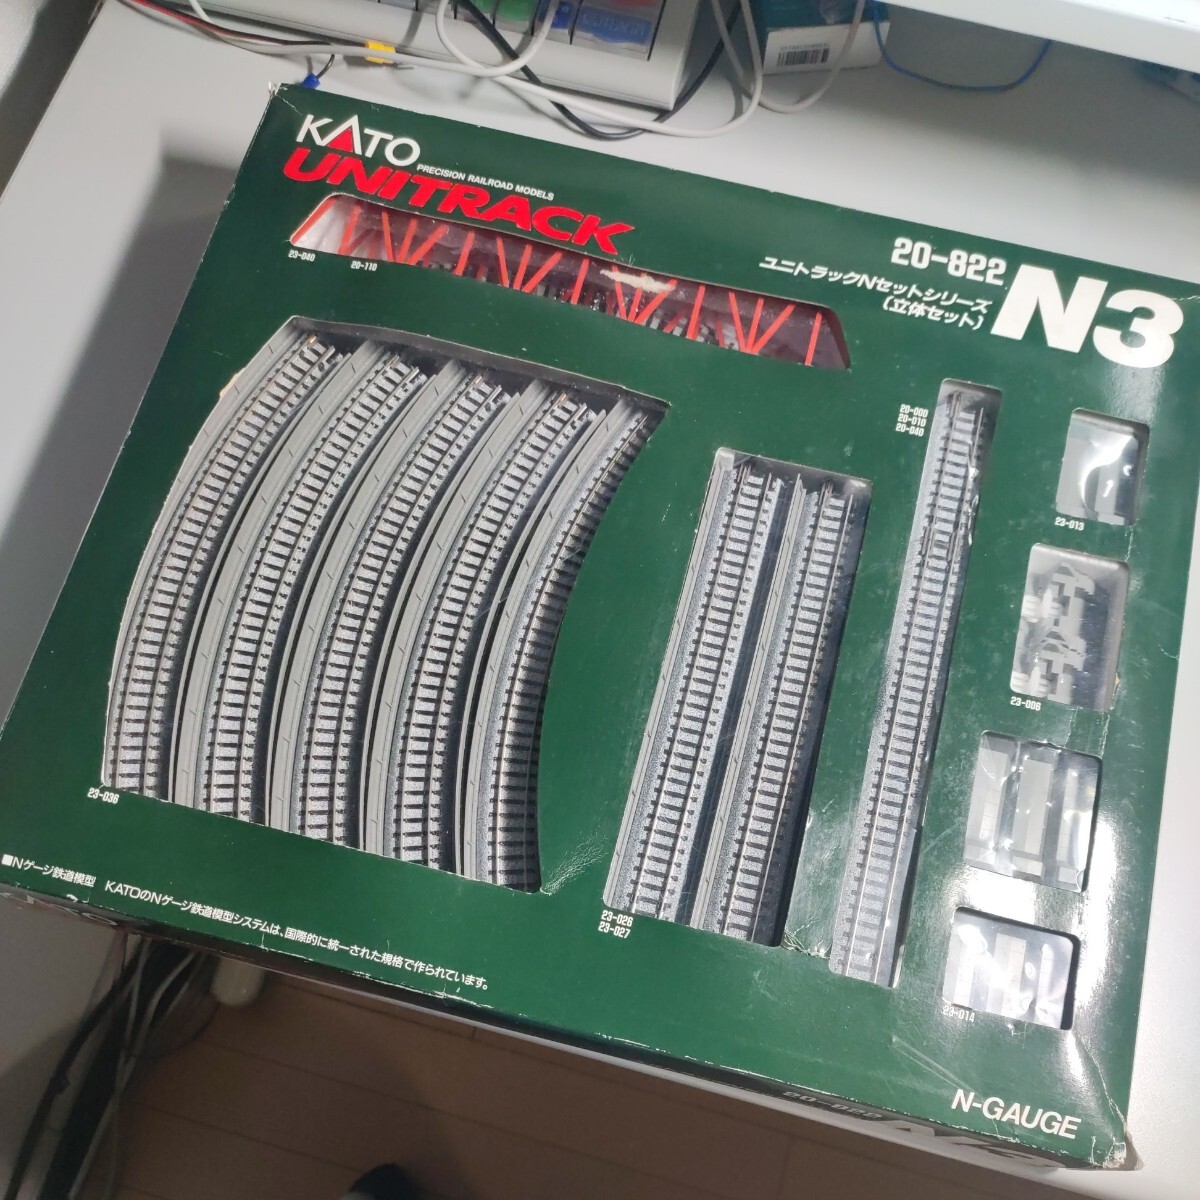 KATO ユニトラック Nセットシリーズ N3 立体セット Nゲージ 鉄道模型 UNITRACK 20-822_画像1